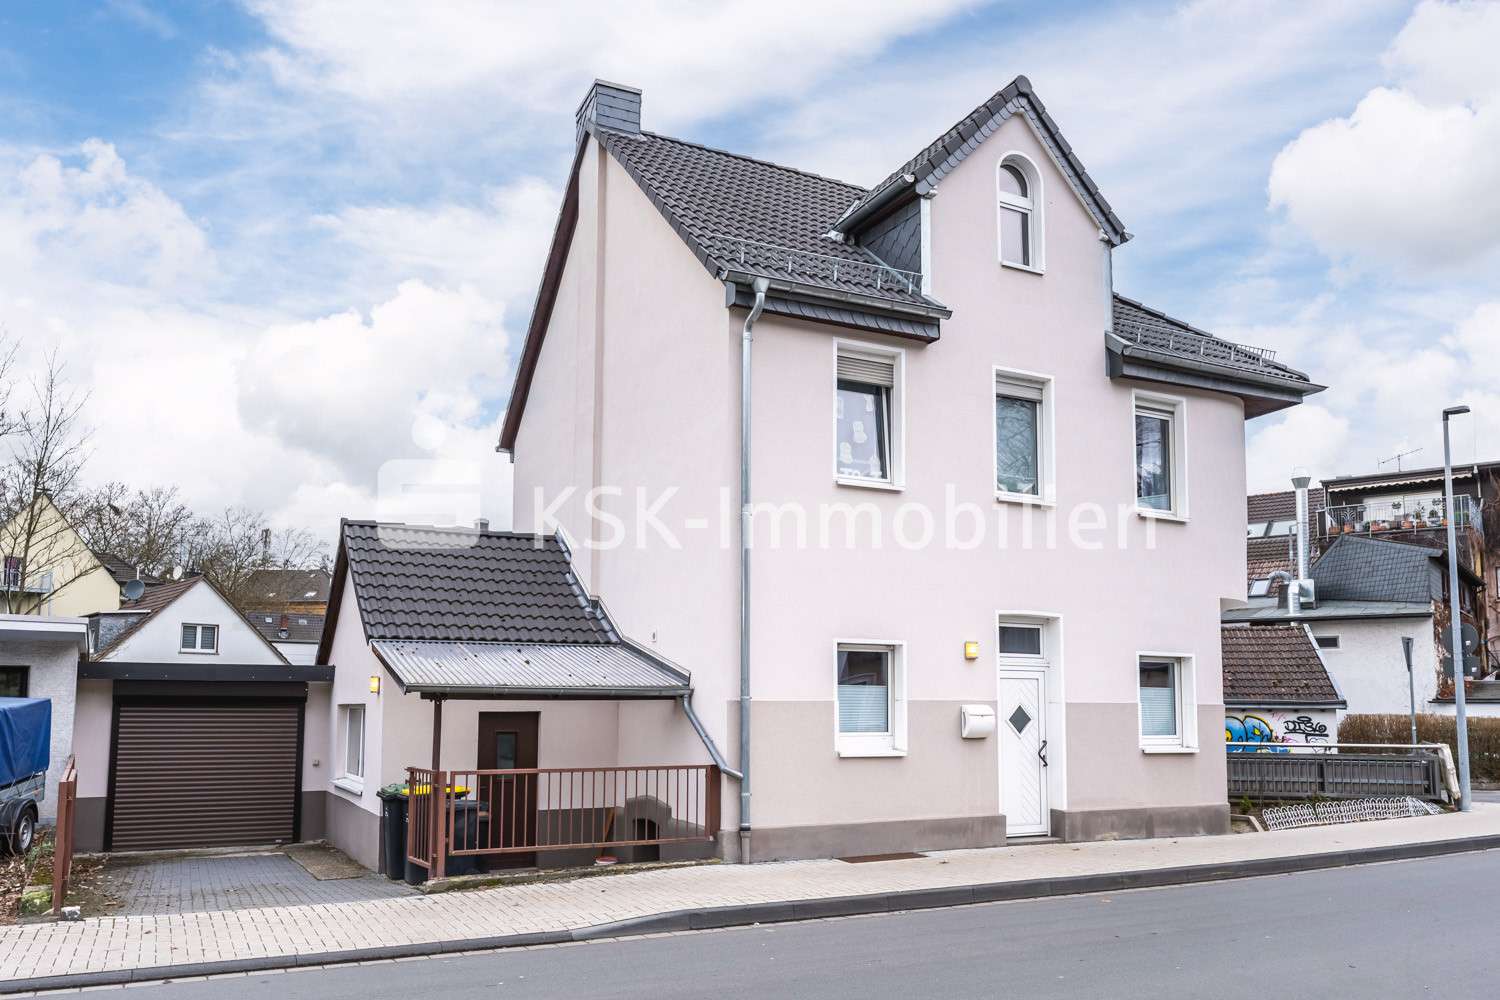 114985 Außenansicht - Einfamilienhaus in 53783 Eitorf mit 115m² günstig kaufen